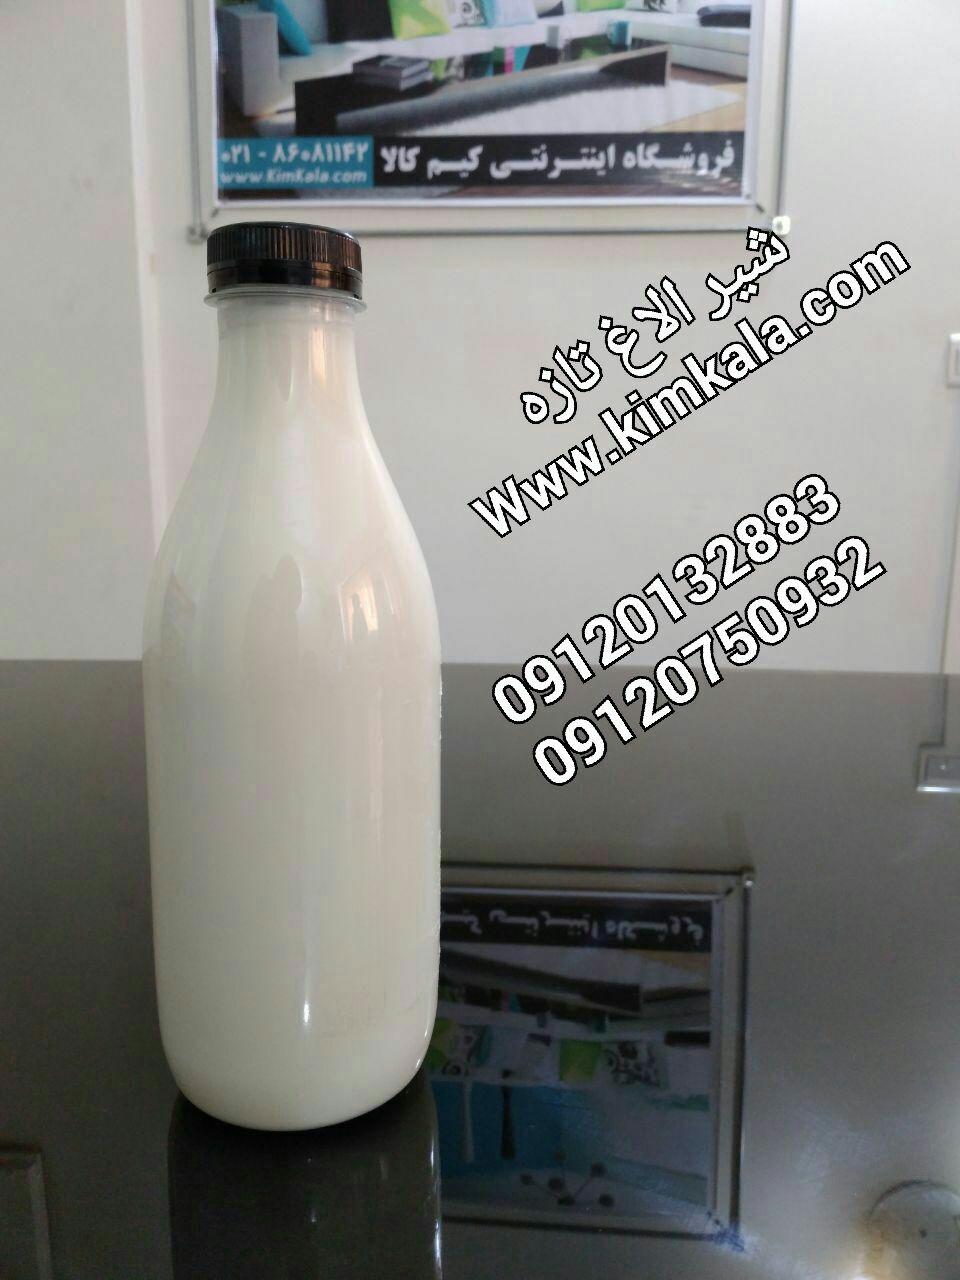 شیر الاغ | 09120750932 | شیر الاغ خالص 